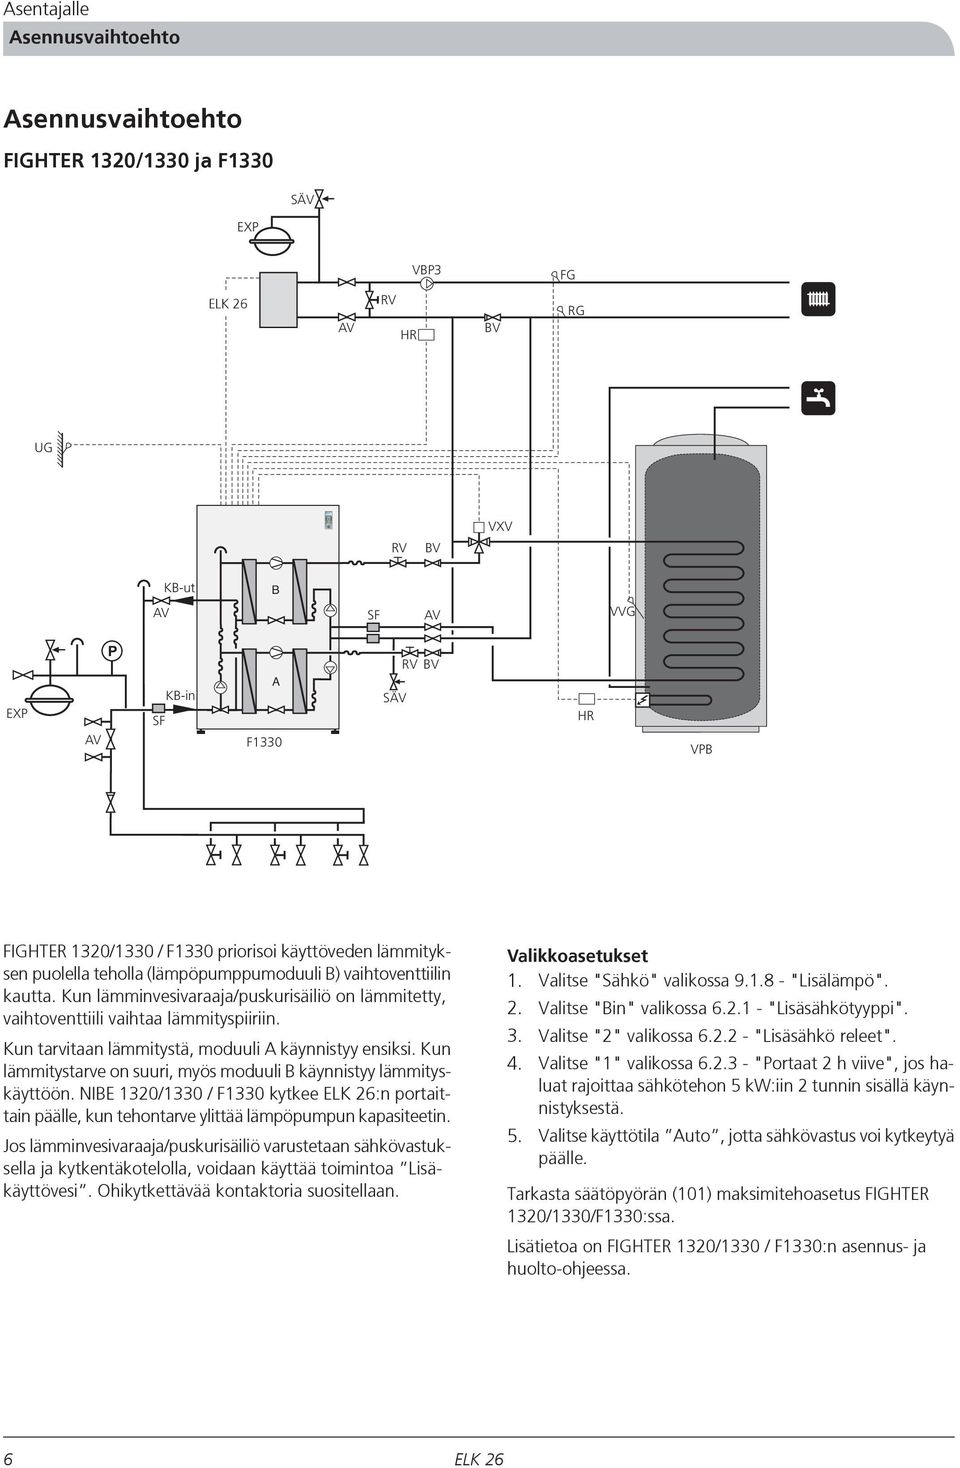 1320/1330 / F1330 priorisoi käyttöveden lämmityksen puolella teholla (lämpöpumppumoduuli B) vaihtoventtiilin kautta.